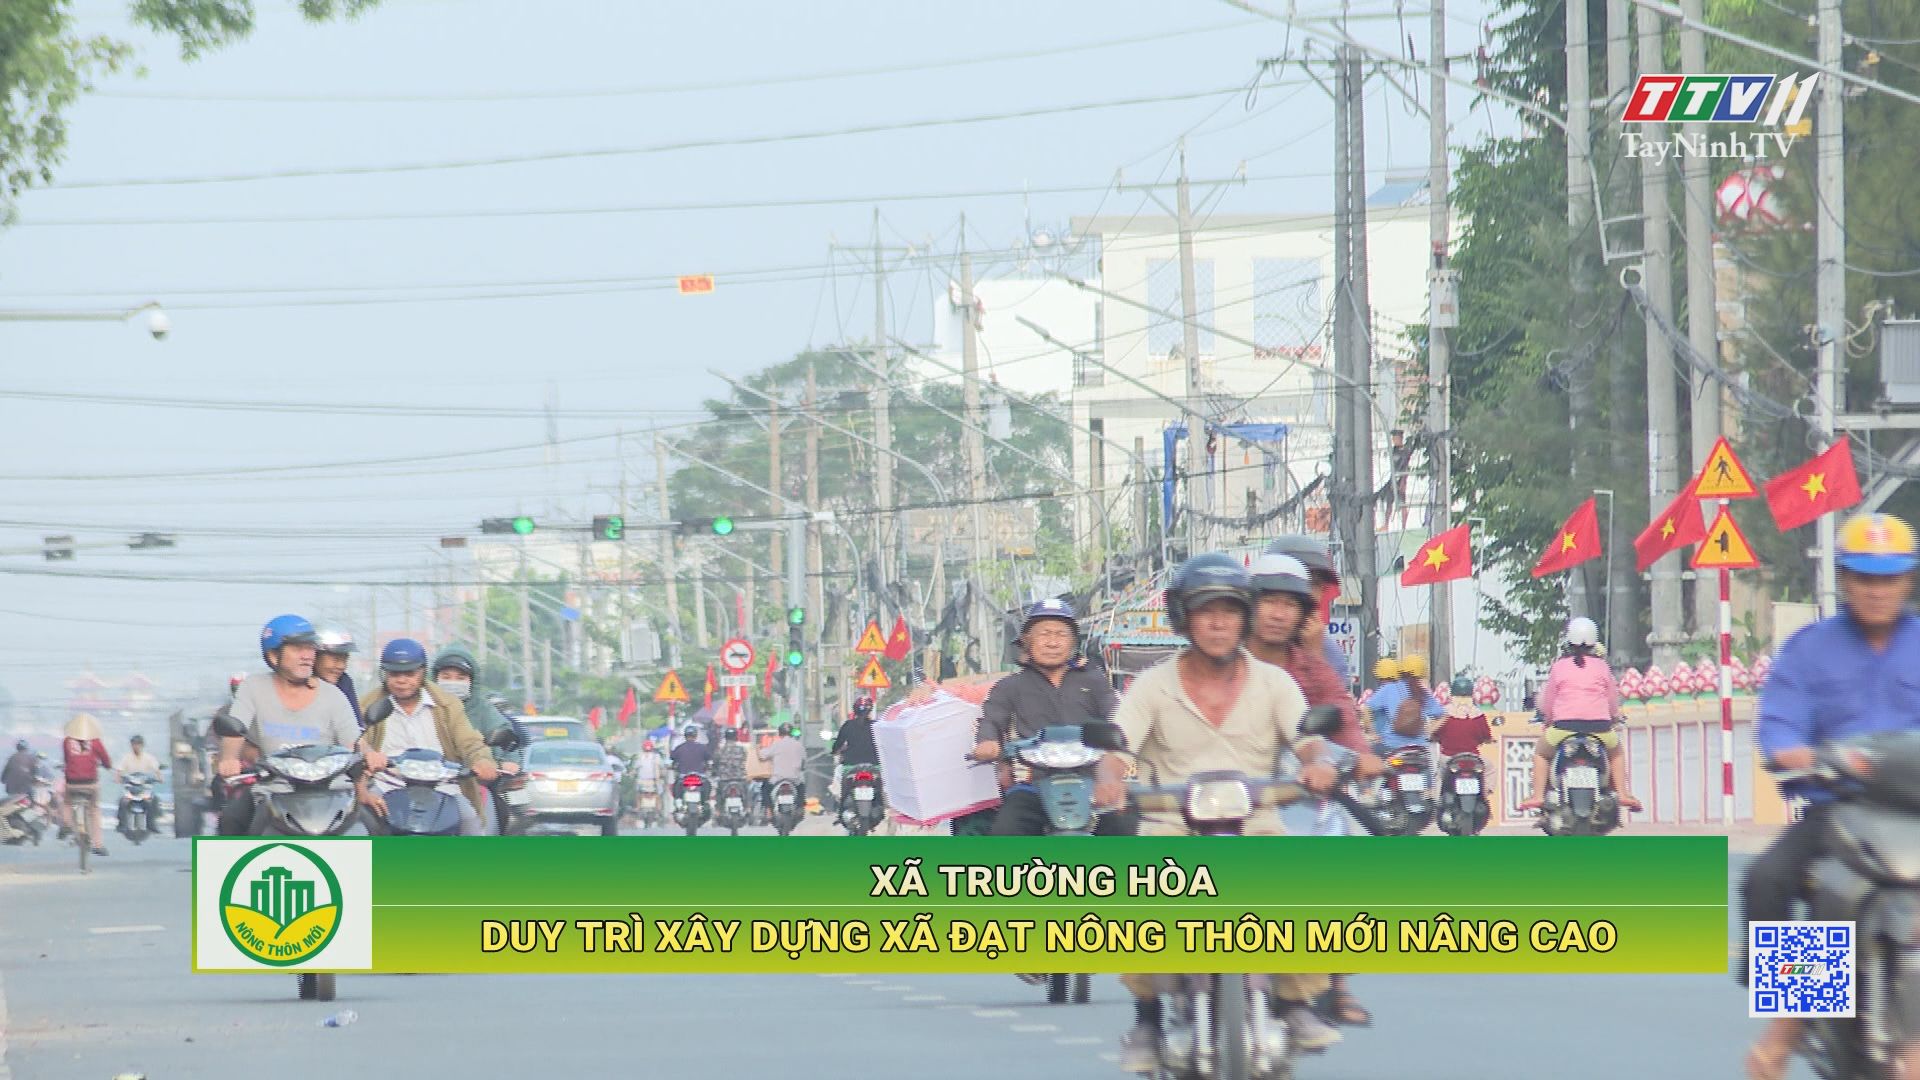 Xã Trường Hòa duy trì xây dựng xã đạt nông thôn mới nâng cao | TÂY NINH XÂY DỰNG NÔNG THÔN MỚI | TayNinhTV